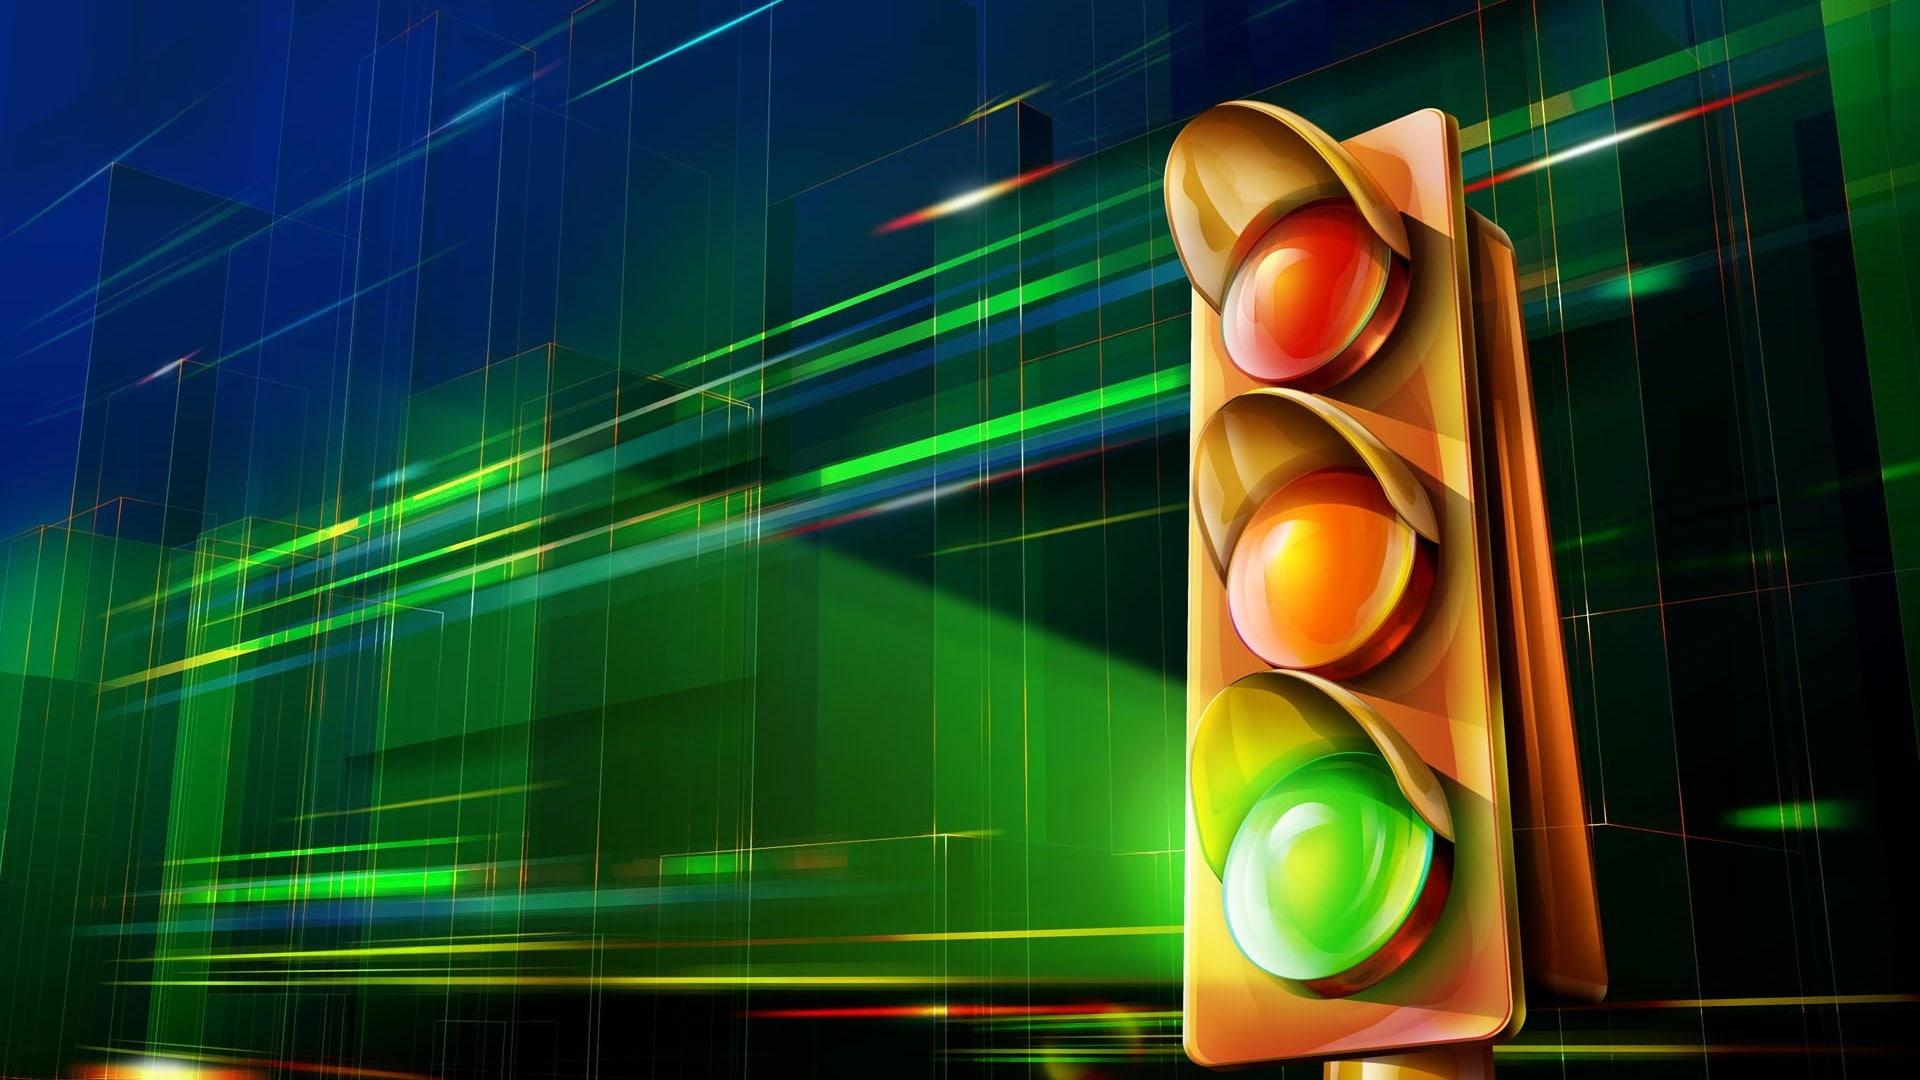 HD wallpaper: red traffic light, traffic lights, signs